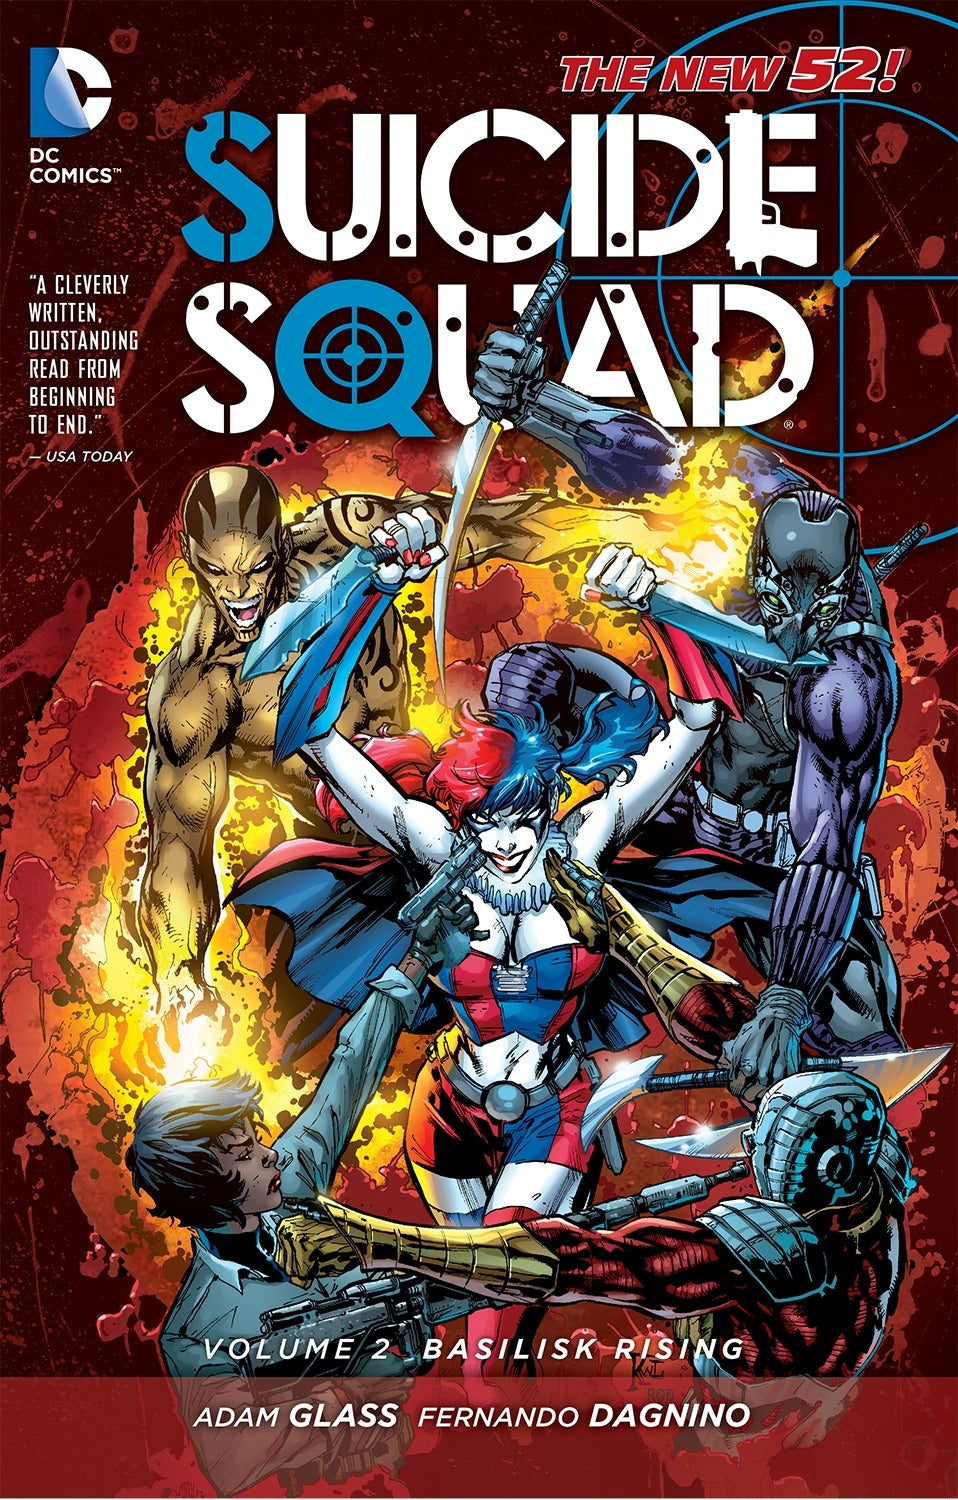 DC comics, DC graphic novels, suicide squad - Best Books